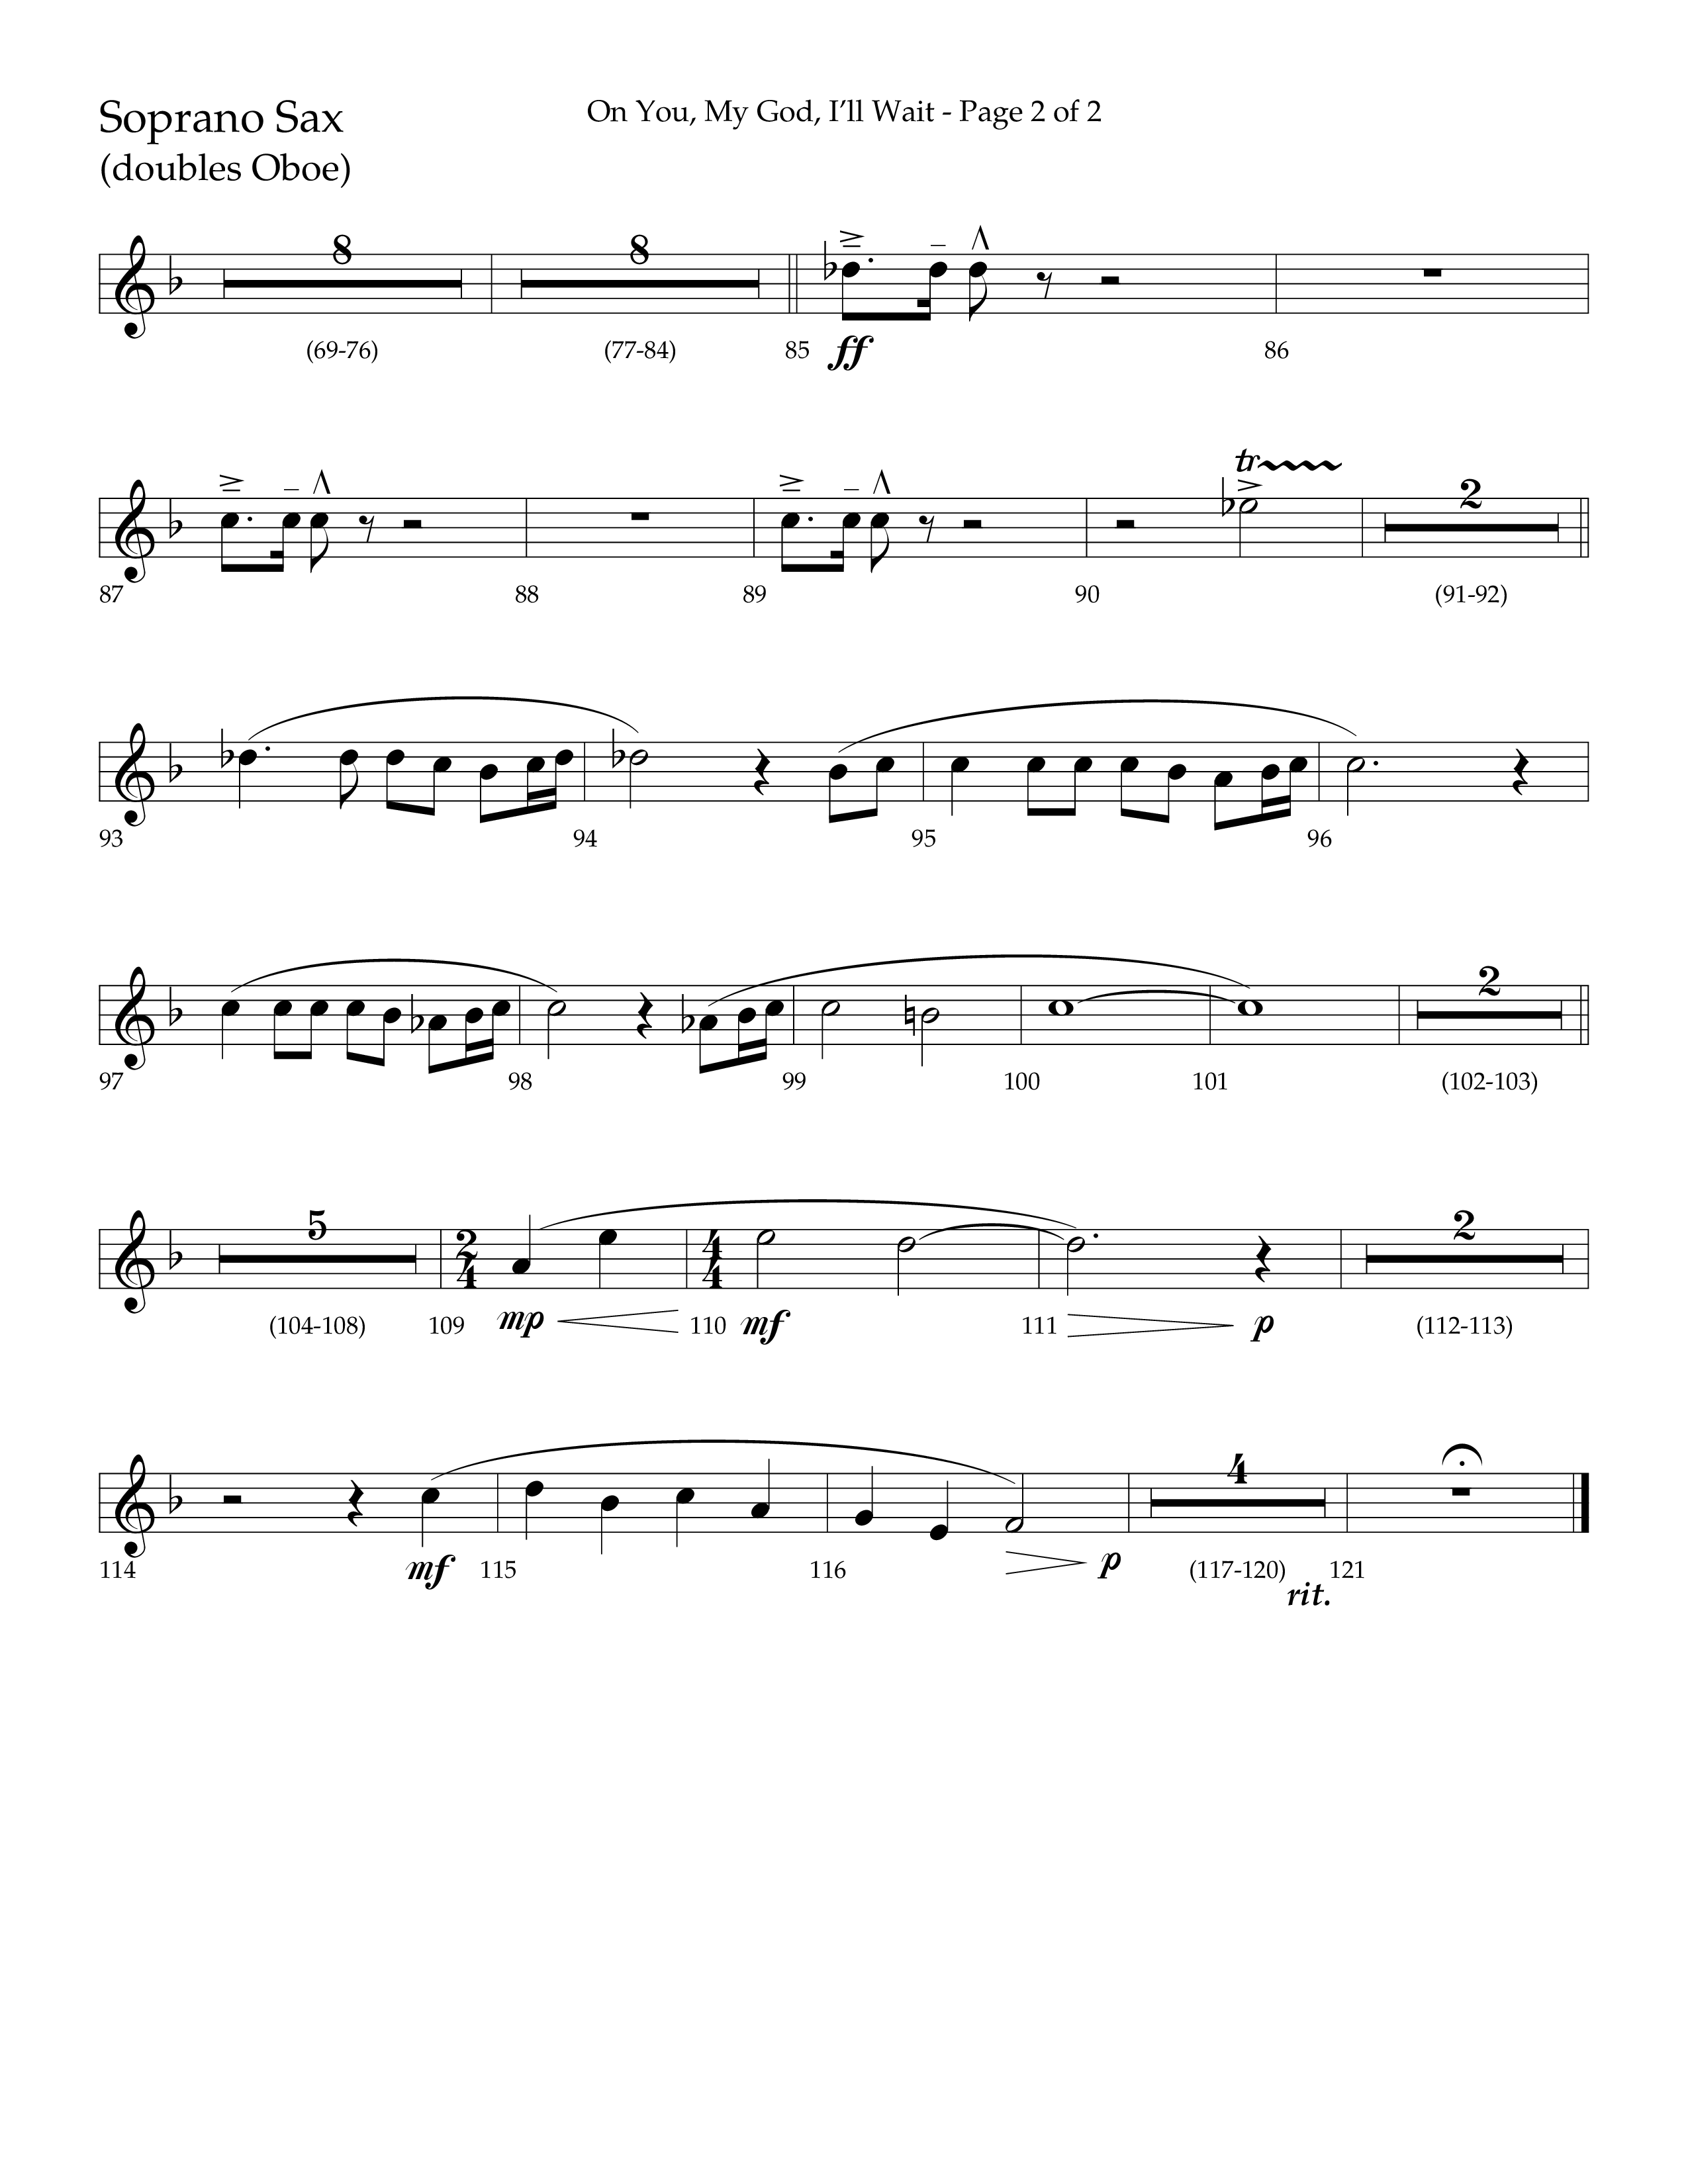 On You My God I'll Wait (Choral Anthem SATB) Soprano Sax (Lifeway Choral / Arr. Craig Adams / Arr. Mike Harland)